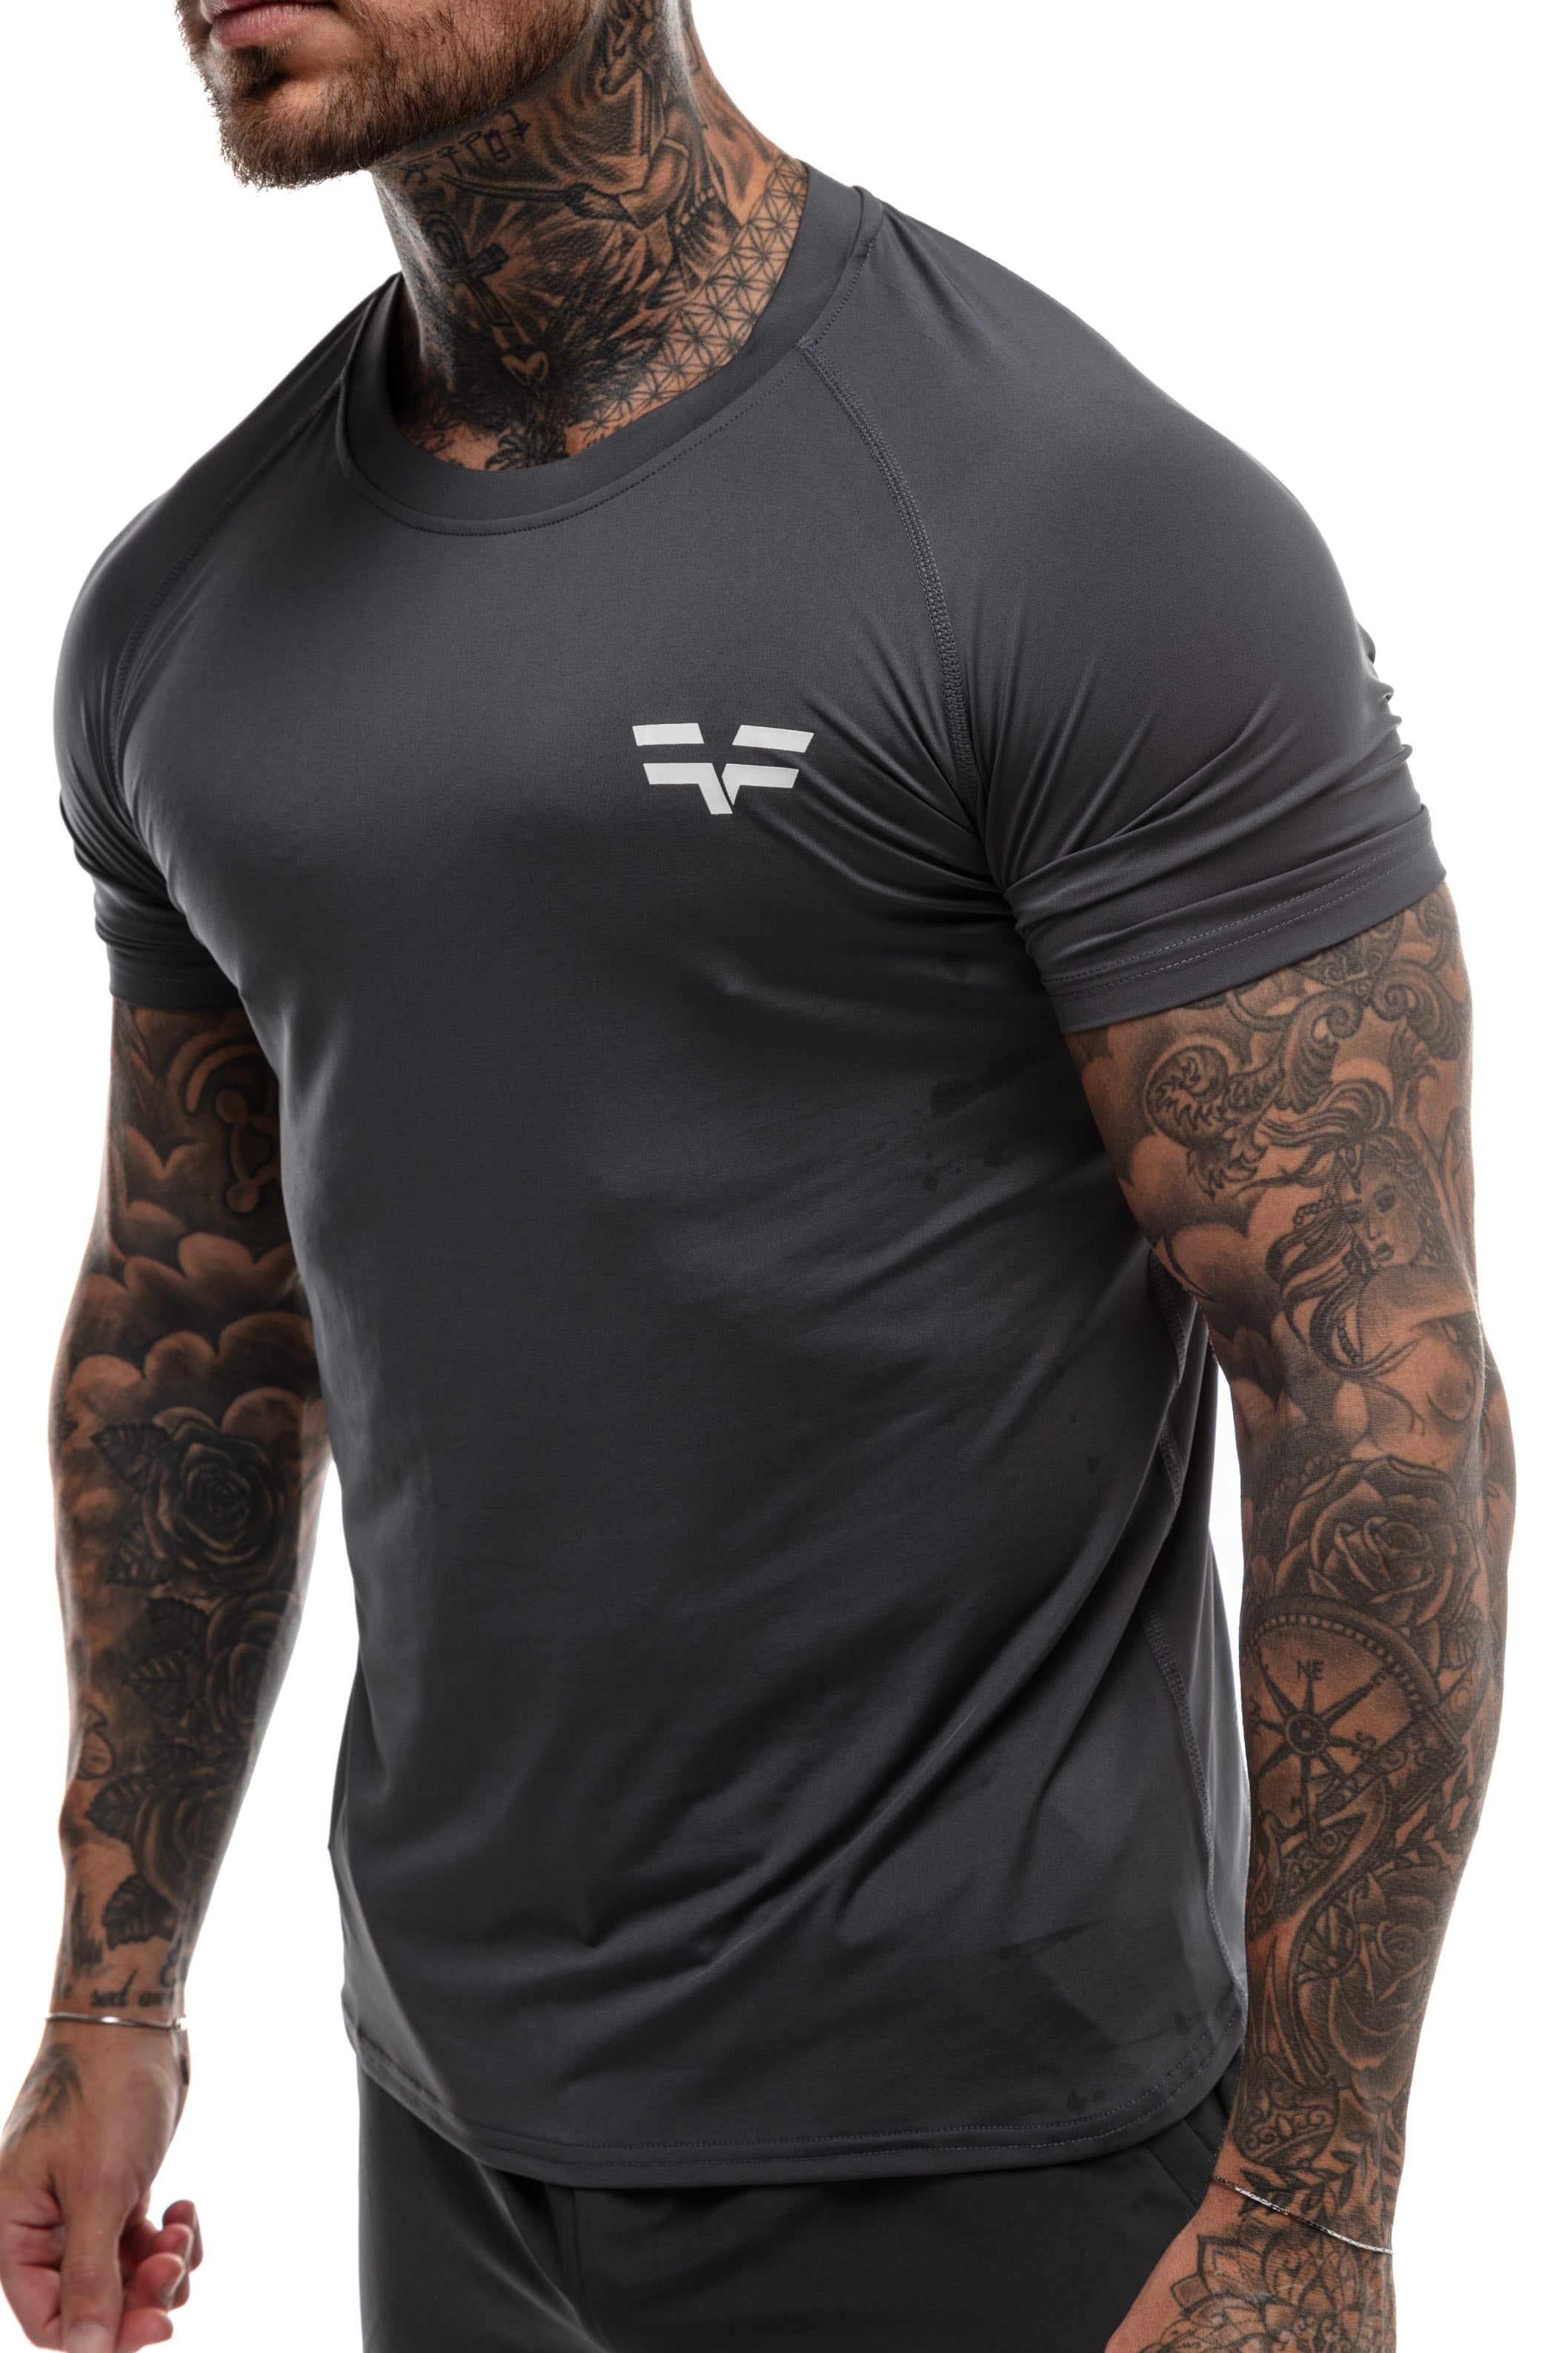 GymFreak Mens 365 T-Shirt - Charcoal